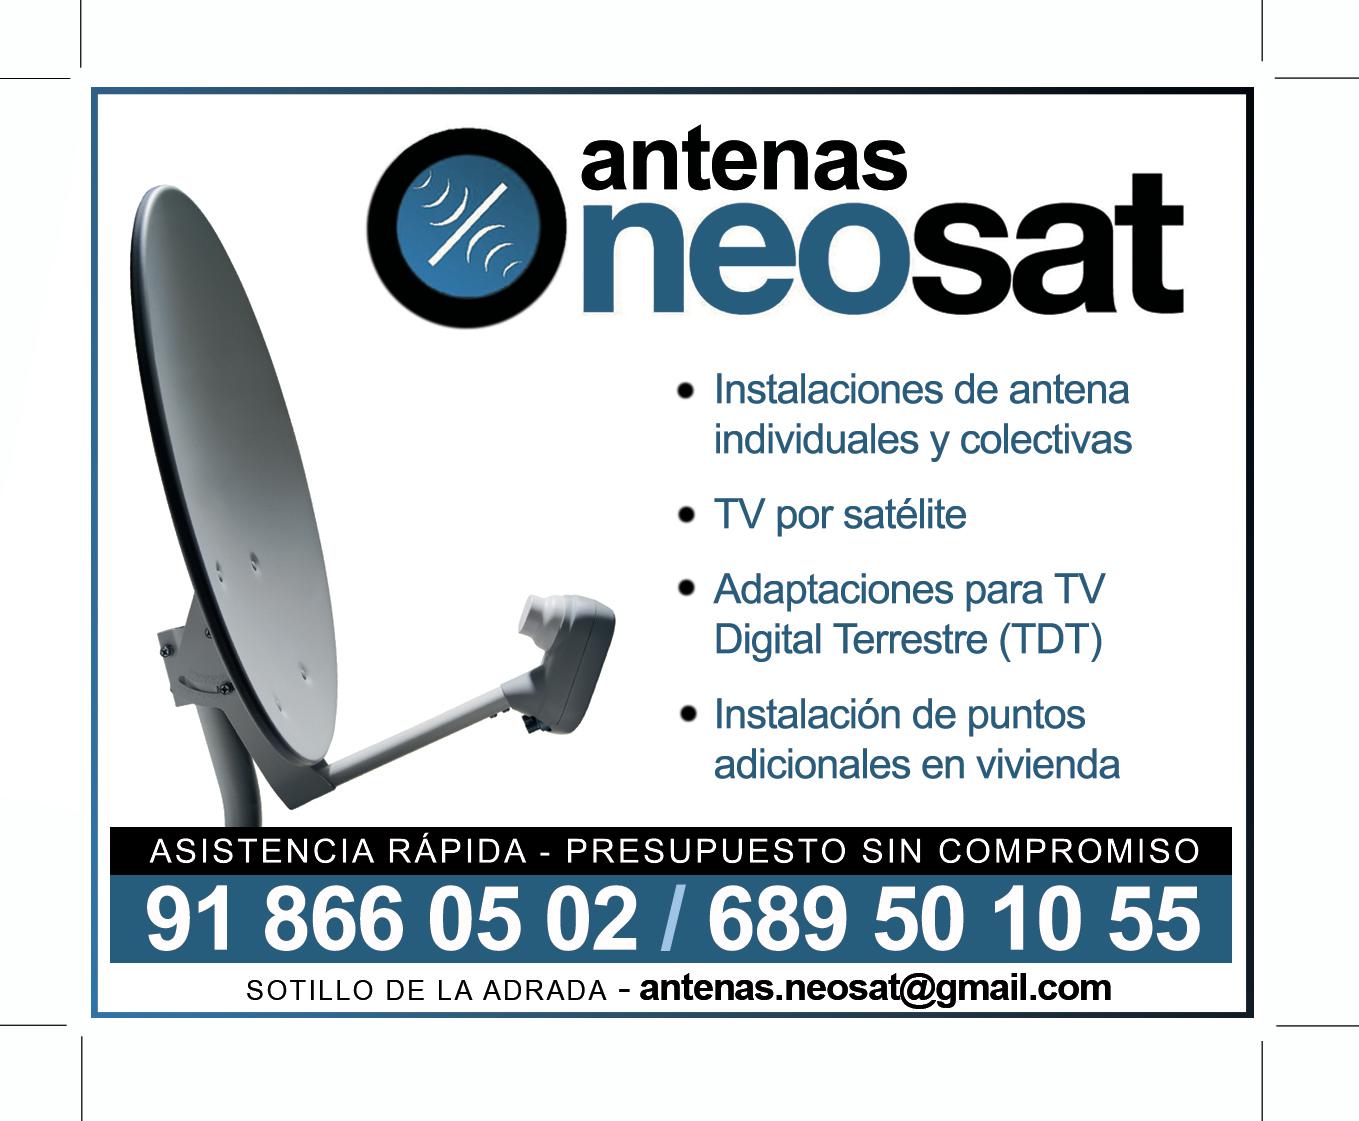 Antenas Neosat Sotillo de la Adrada